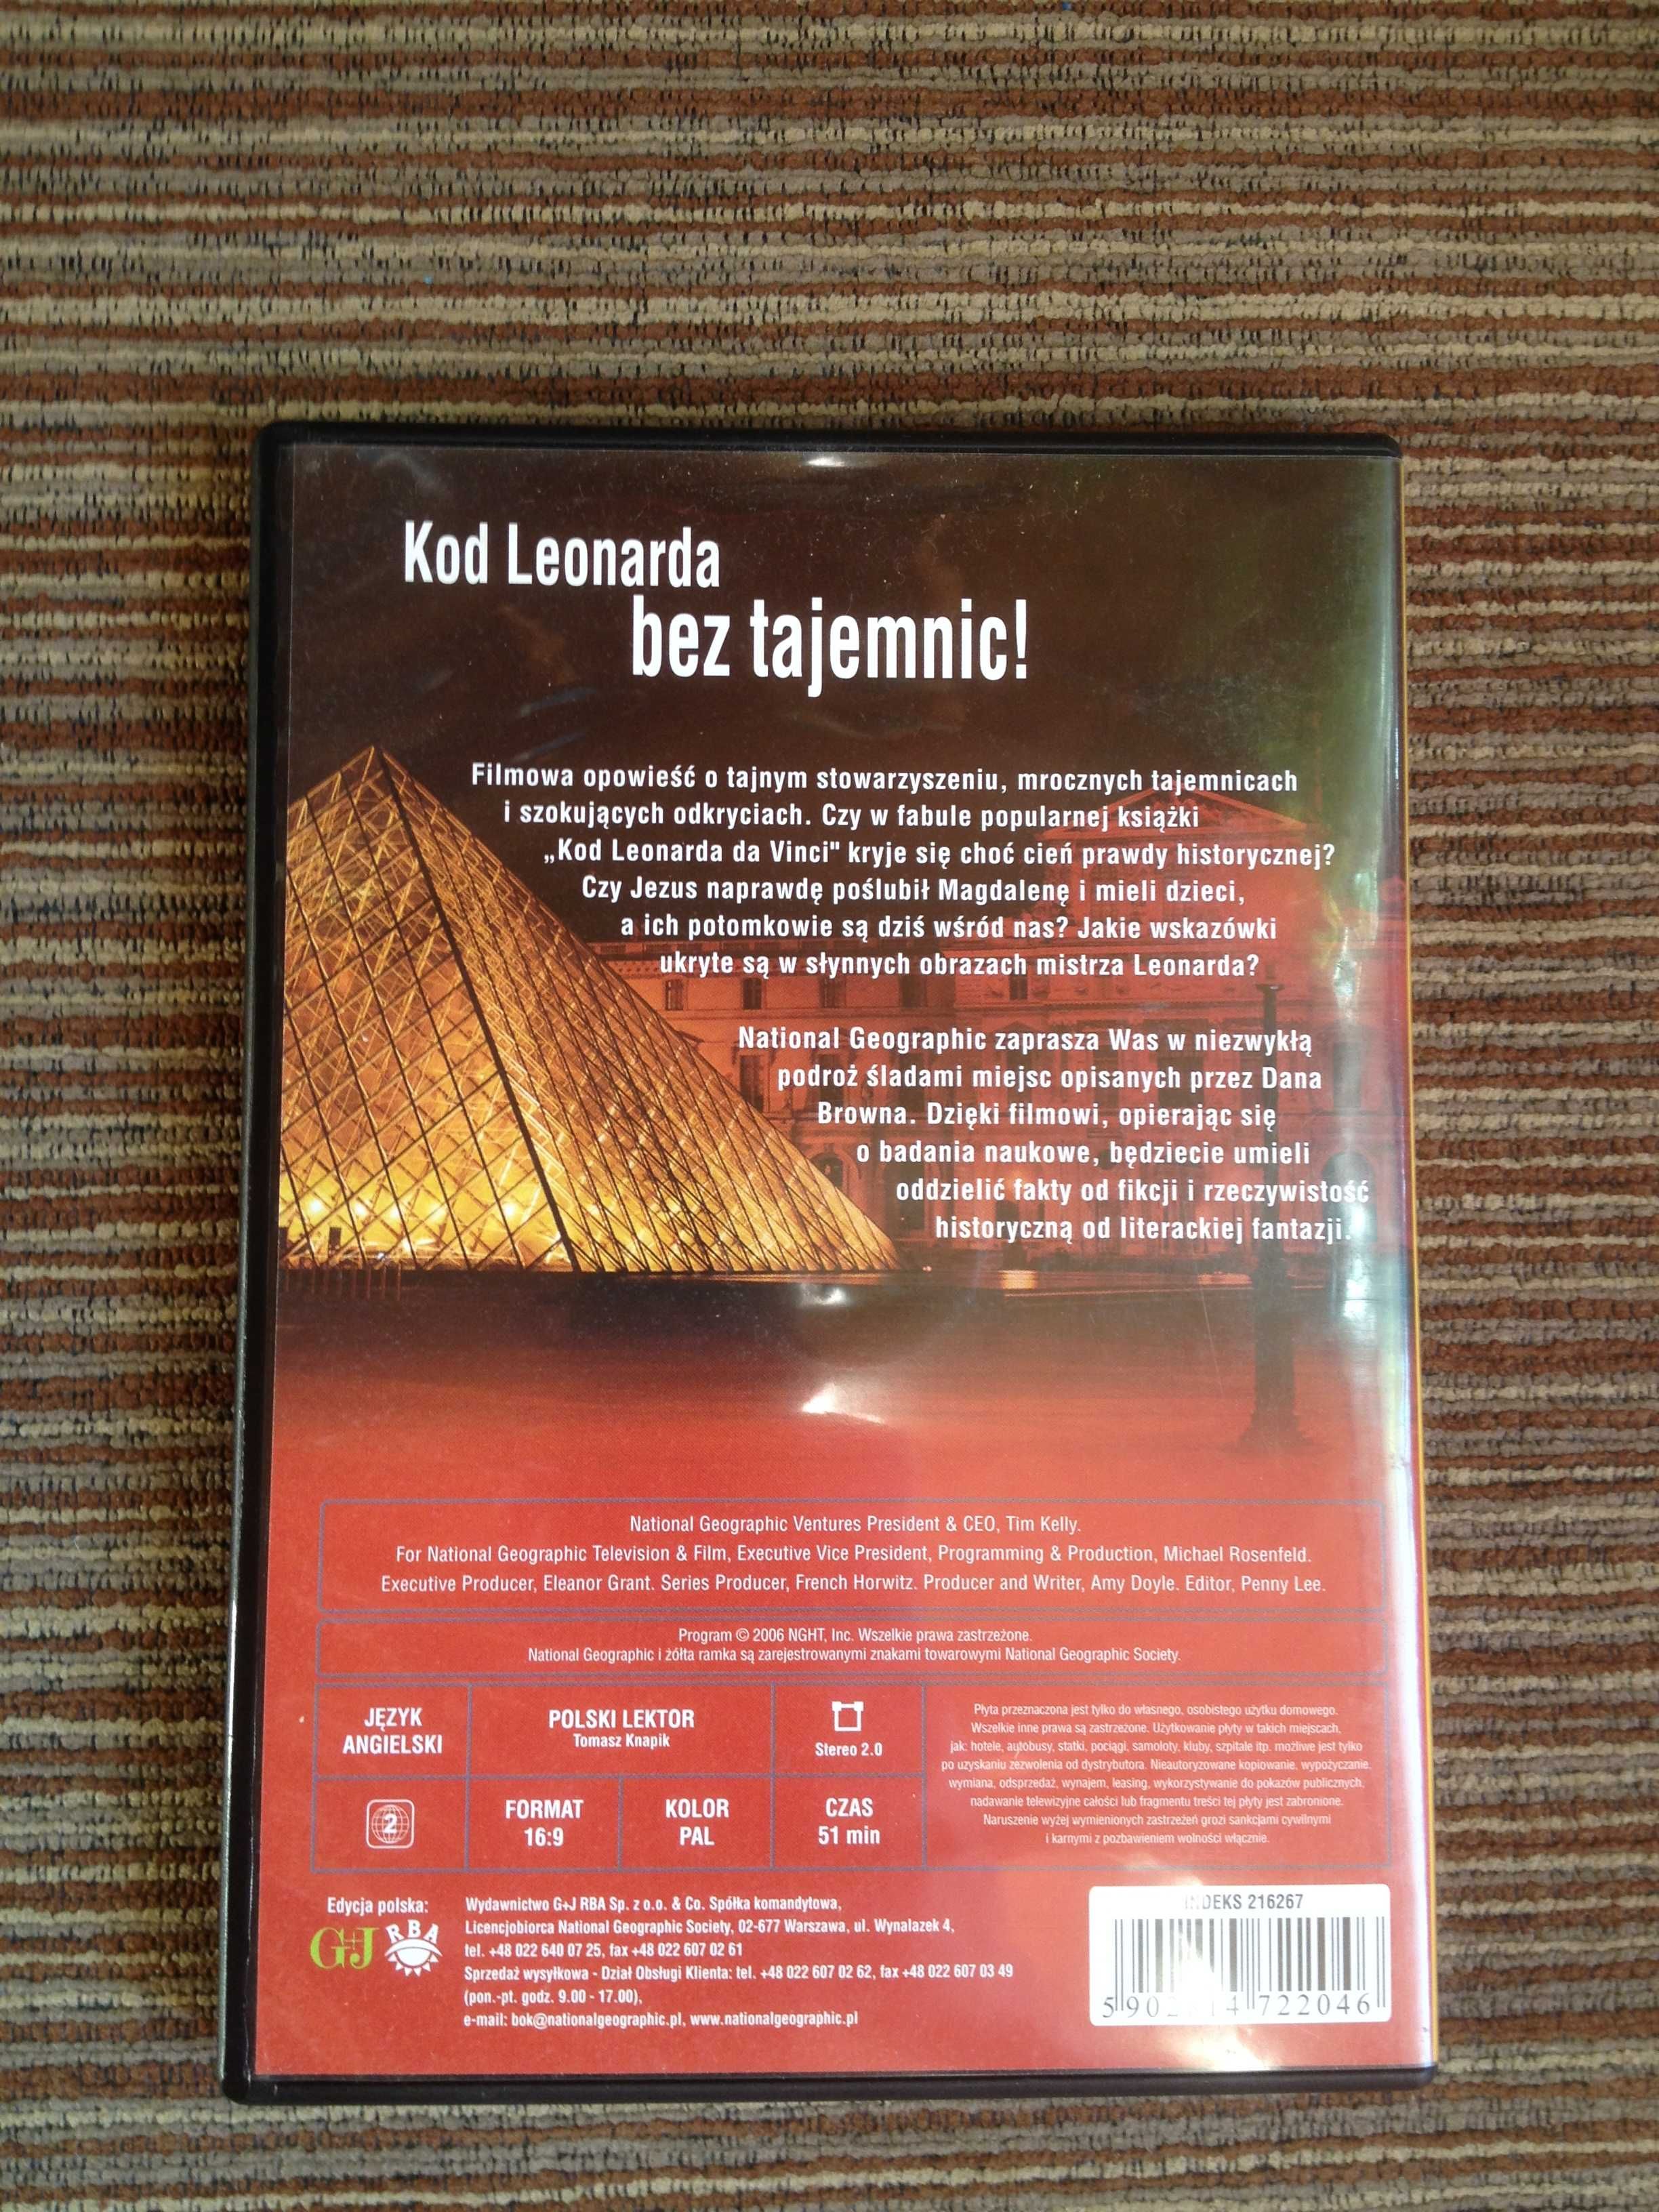 Film DVD Kod Leonarda DaVinci Prawda czy fikcja? National Geographic